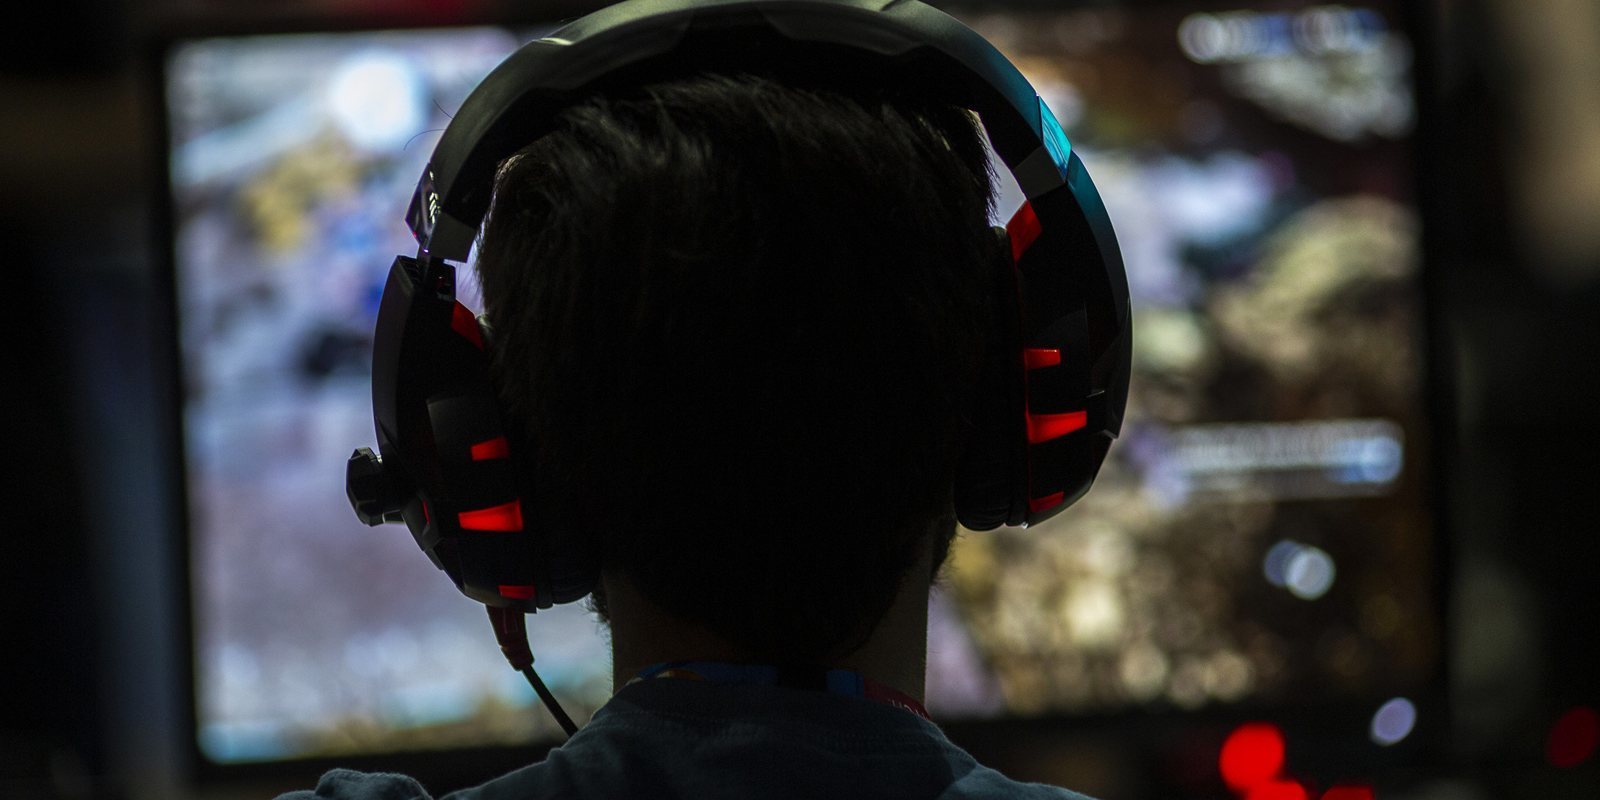 Un estudio de Oxford concluye que la "adicción" a los videojuegos proviene de factores externos